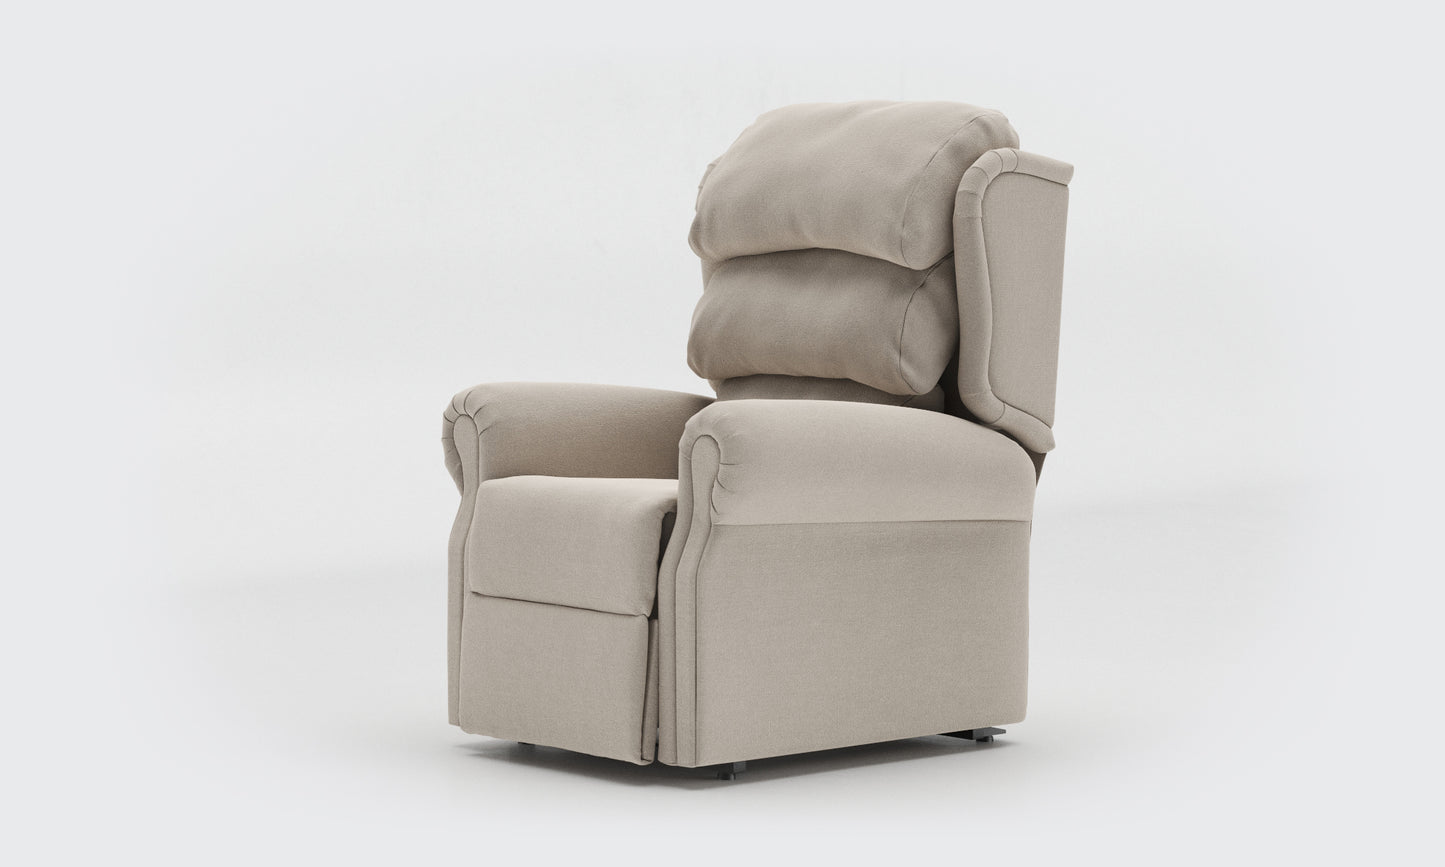 adara rise recliner chair compact waterfall fabric Linen